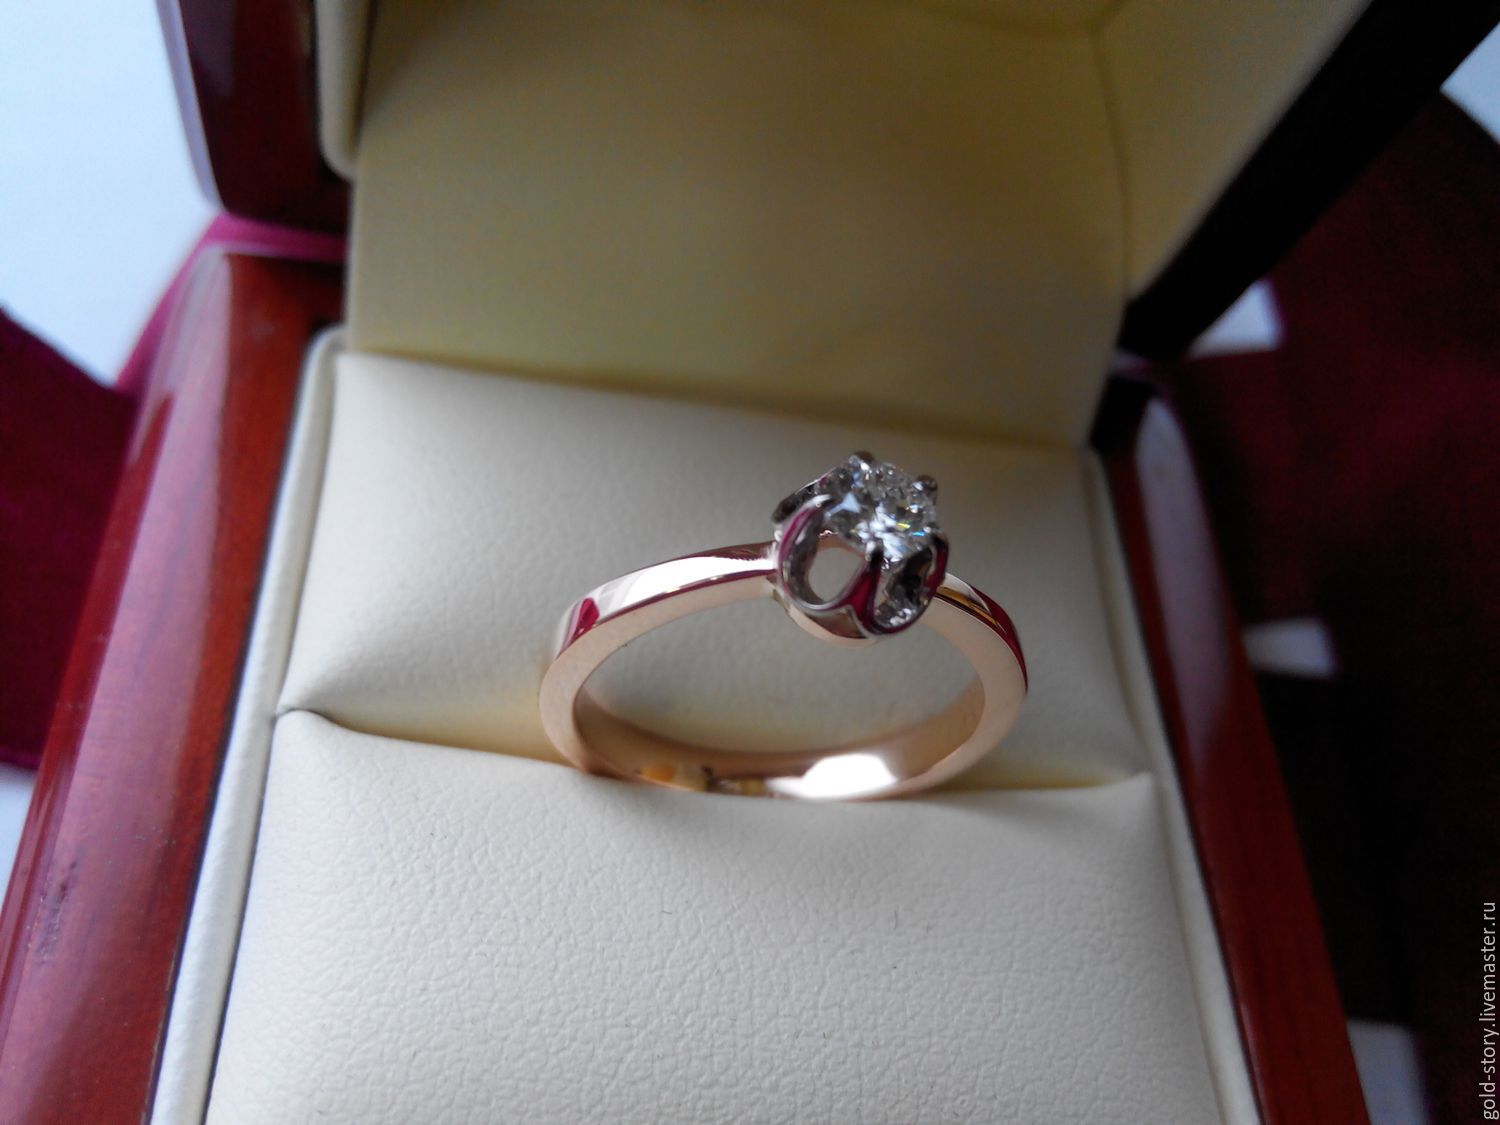 Золотое кольцо подарок. Артикул 57646 золотое кольцо с бриллиантами. Кольцо Пандора золотое с бриллиантами. Кольцо помолвочное золотой Легион. Кольцо для предложения.